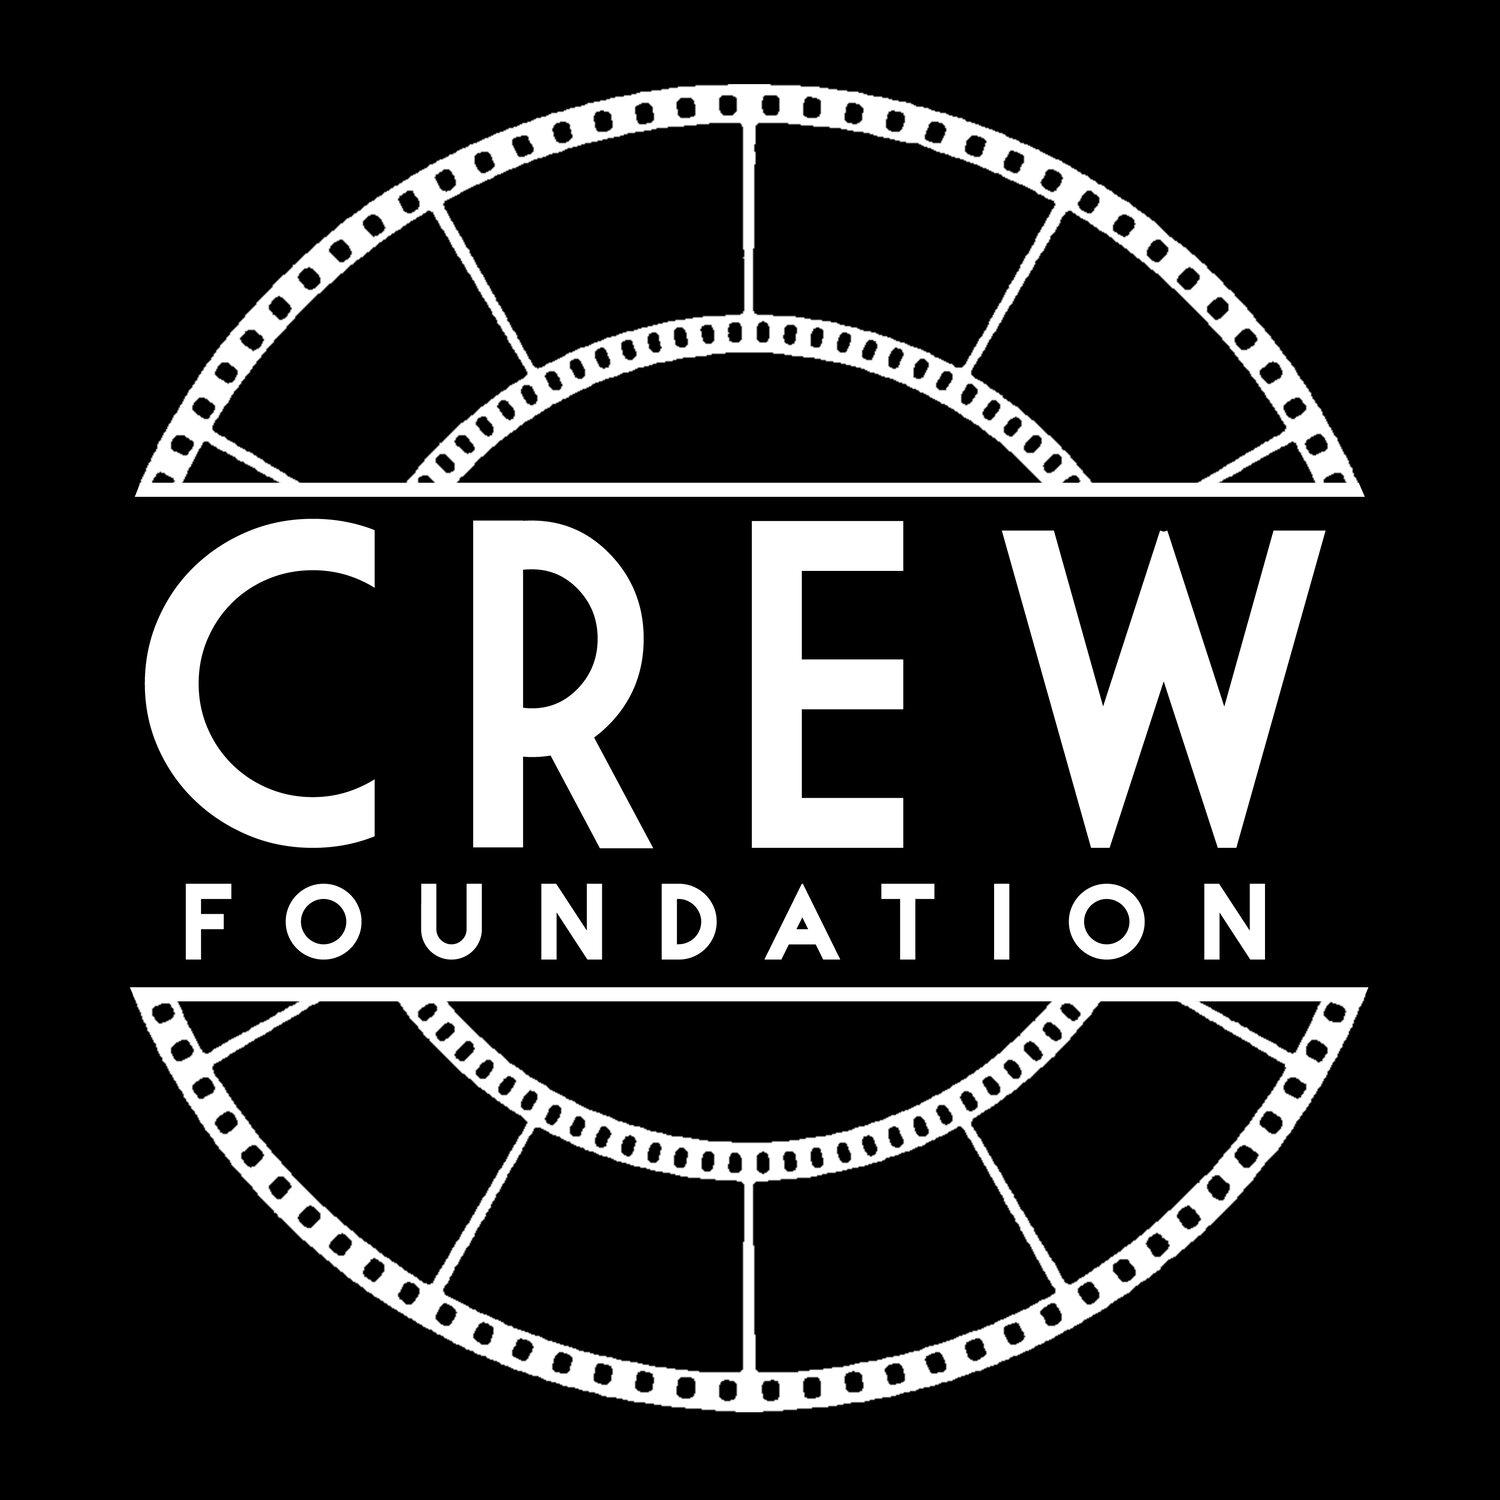 The C.R.E.W. Foundation